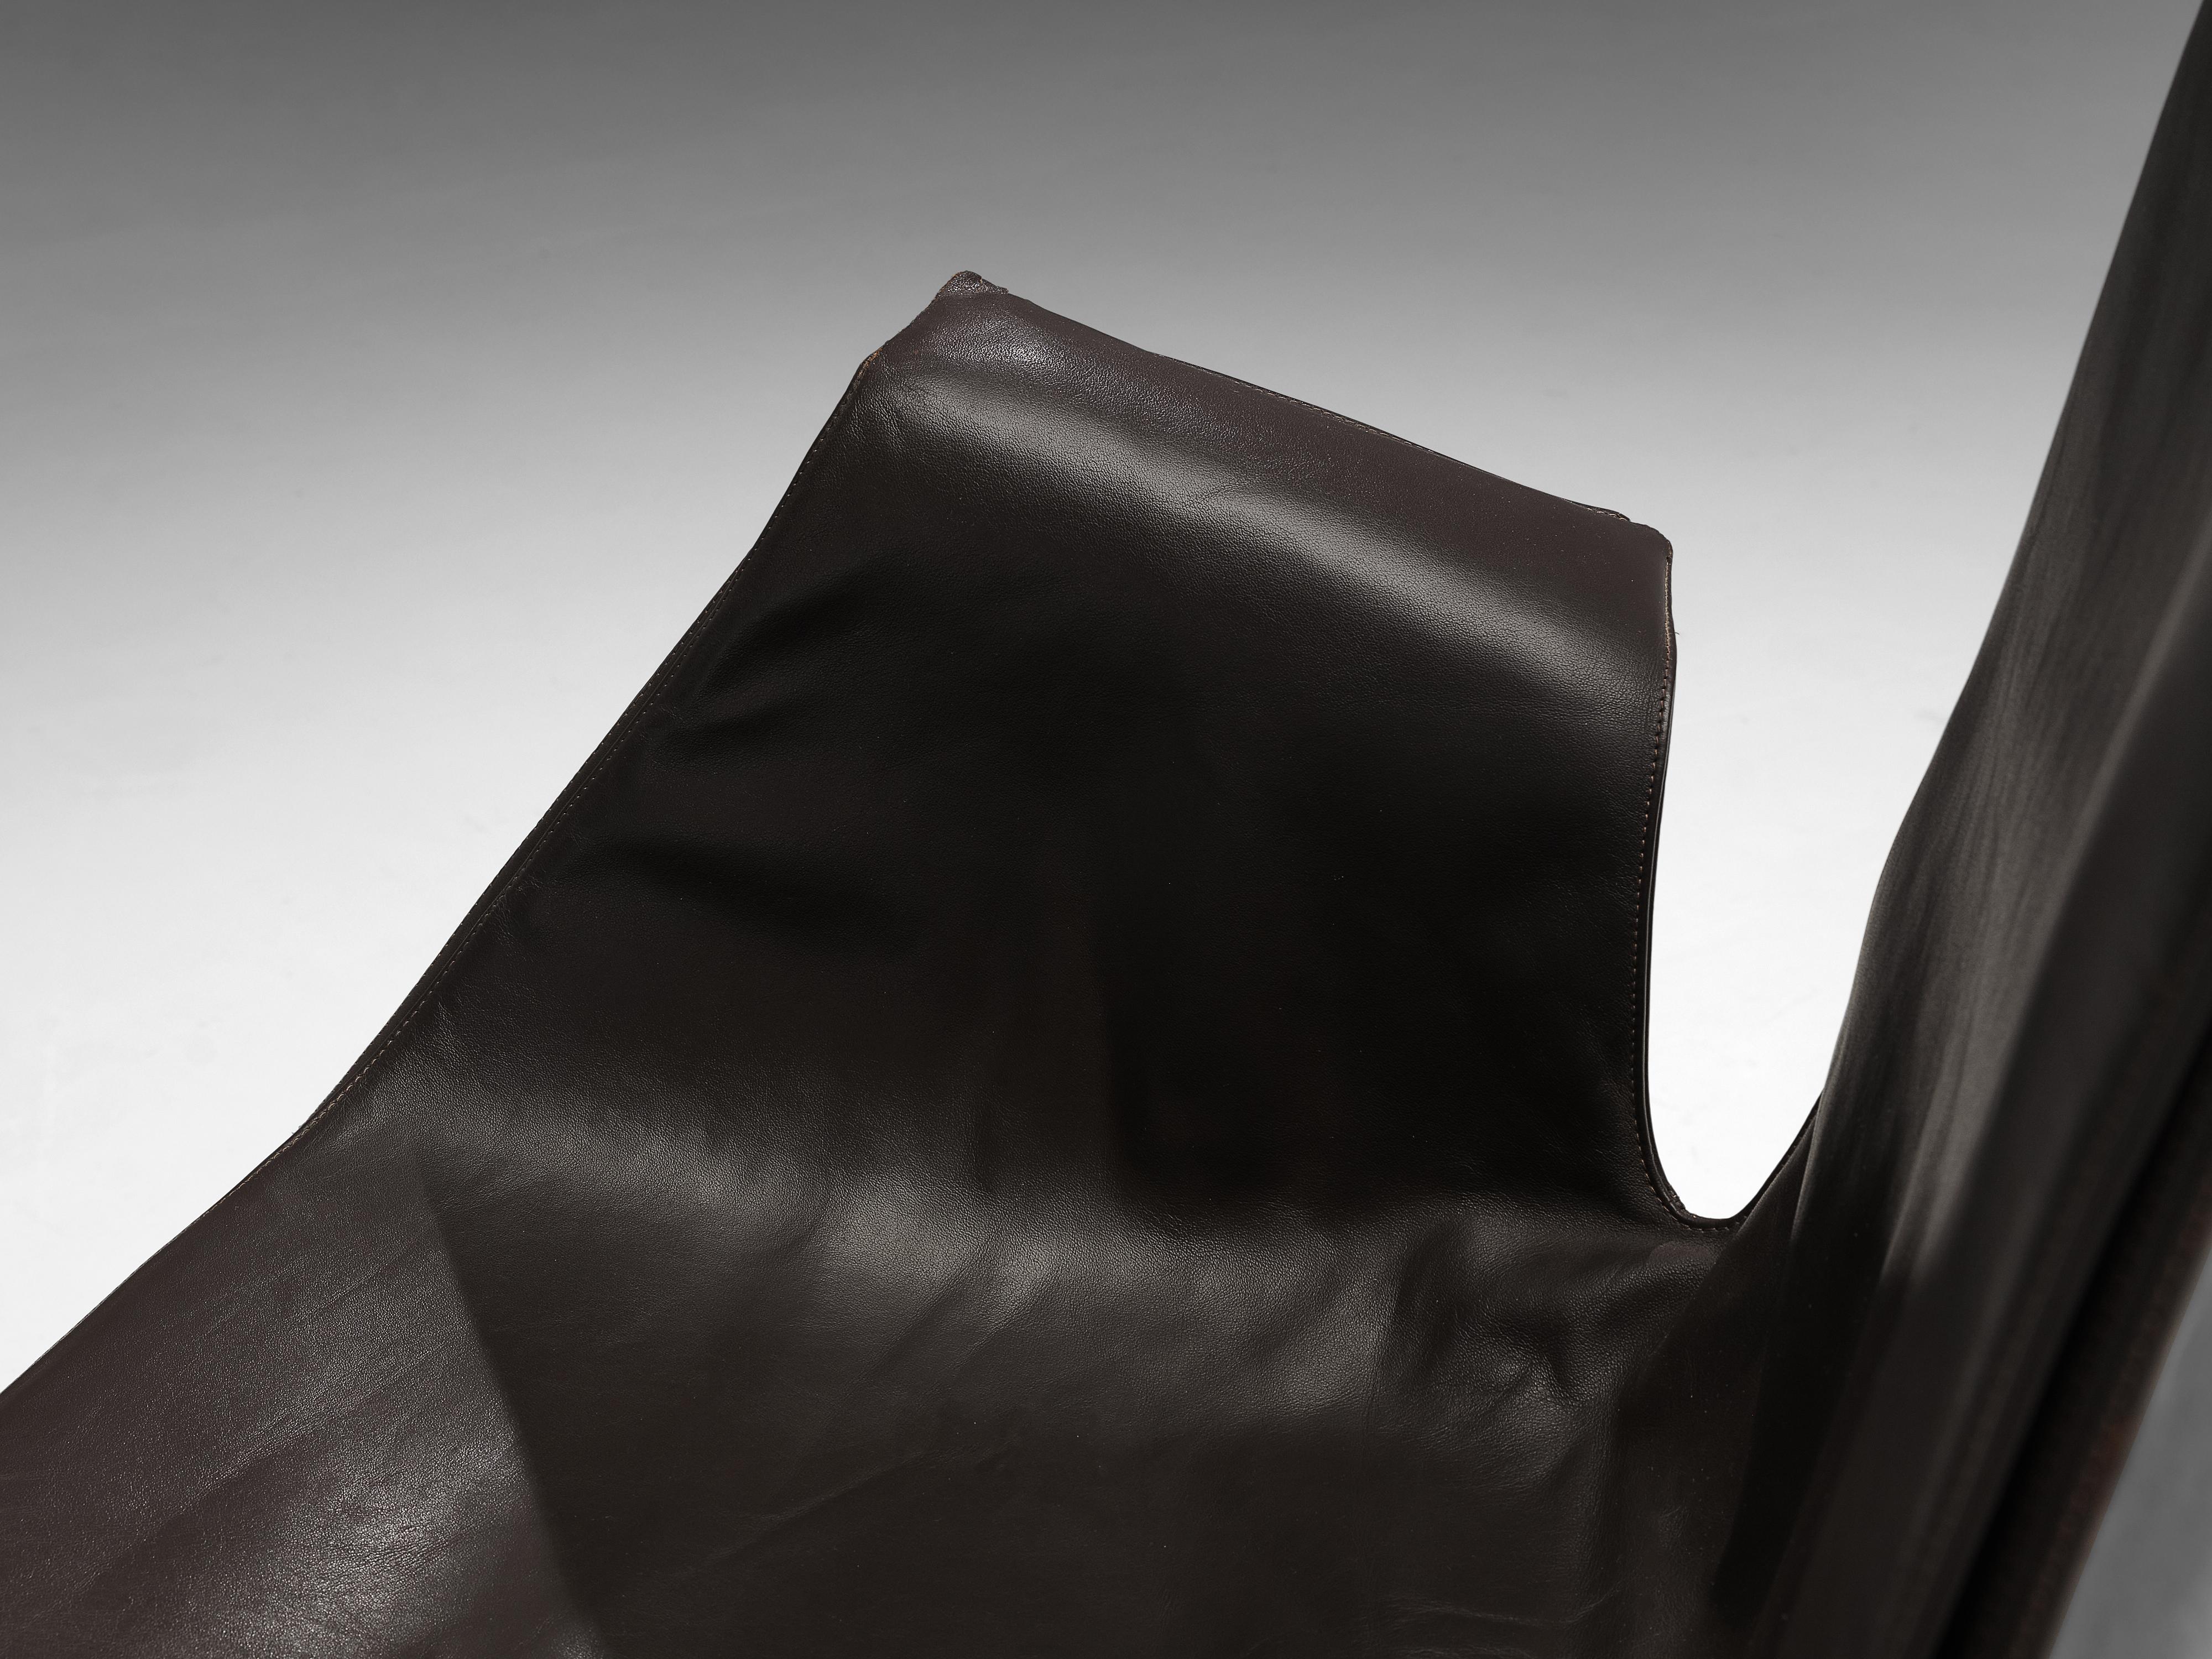 Steel Fabricius & Kastholm Pair of Swivel Chairs Model 'FK 6725' in Black Leather